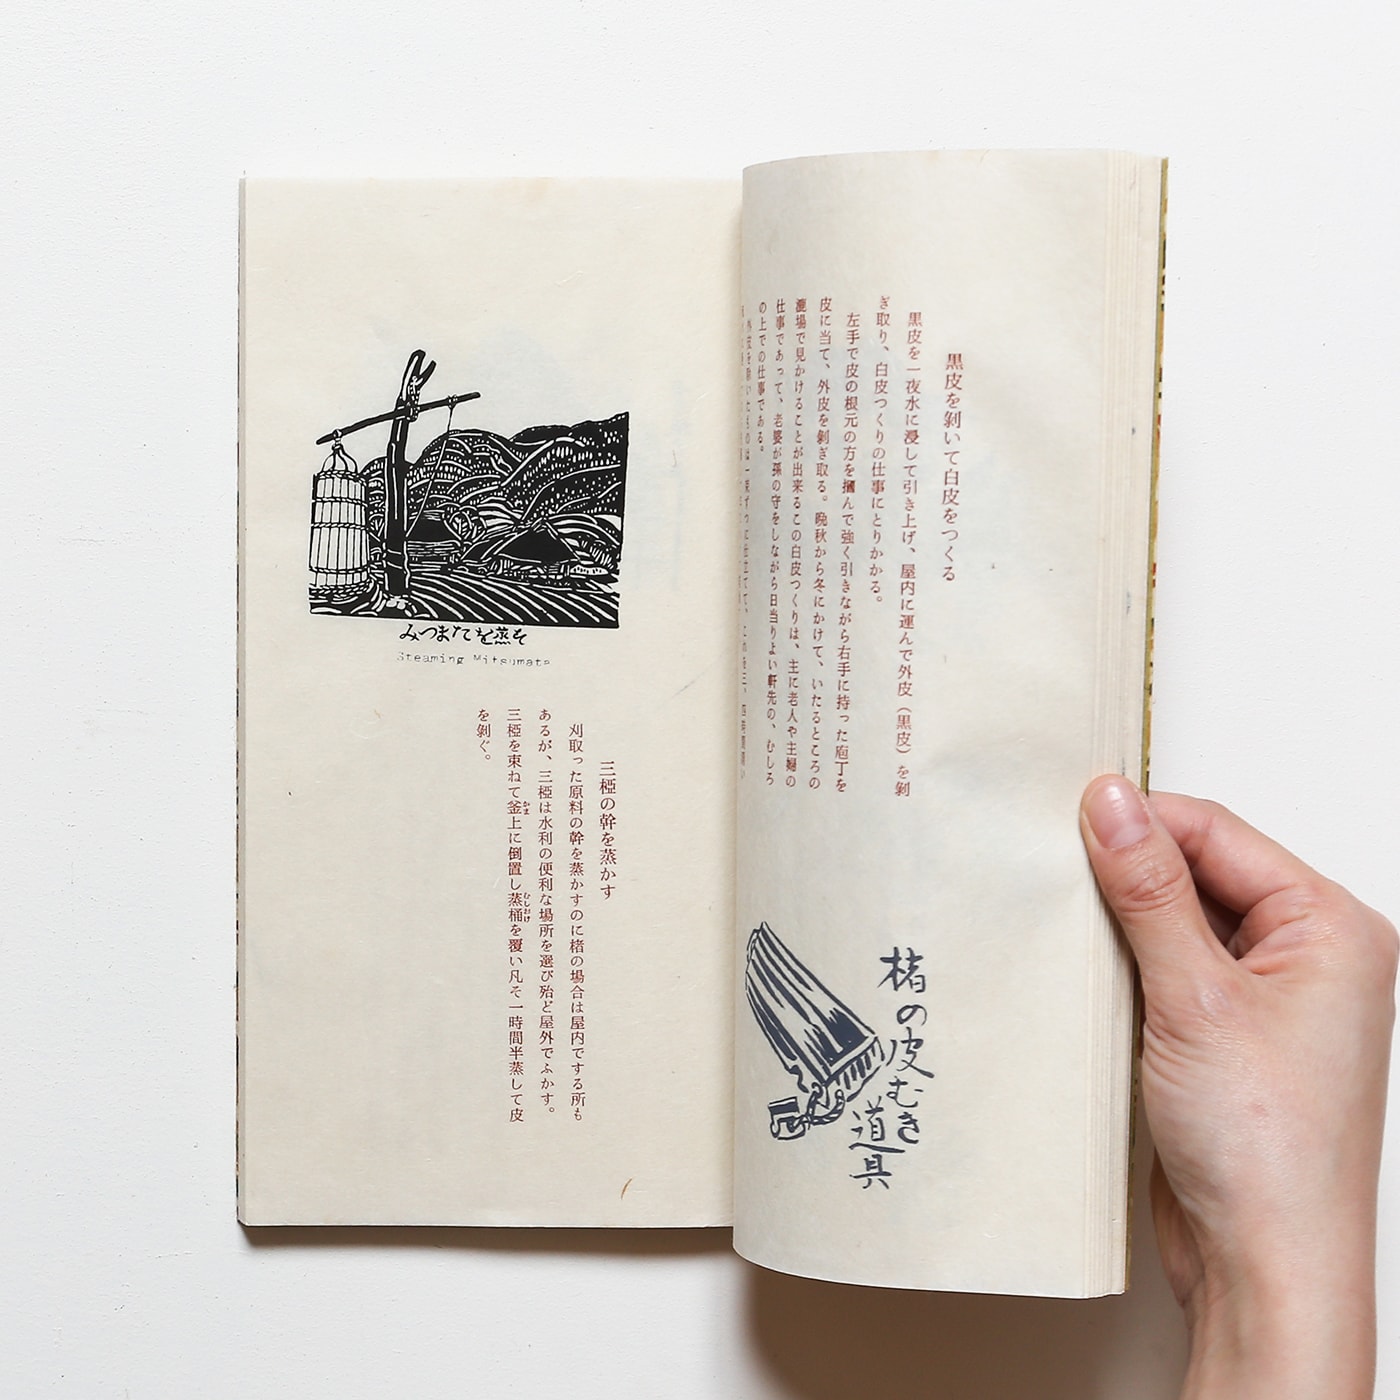 人気カラーの 民芸:後藤清吉郎『紙の旅』限定300部 美術出版社/手漉